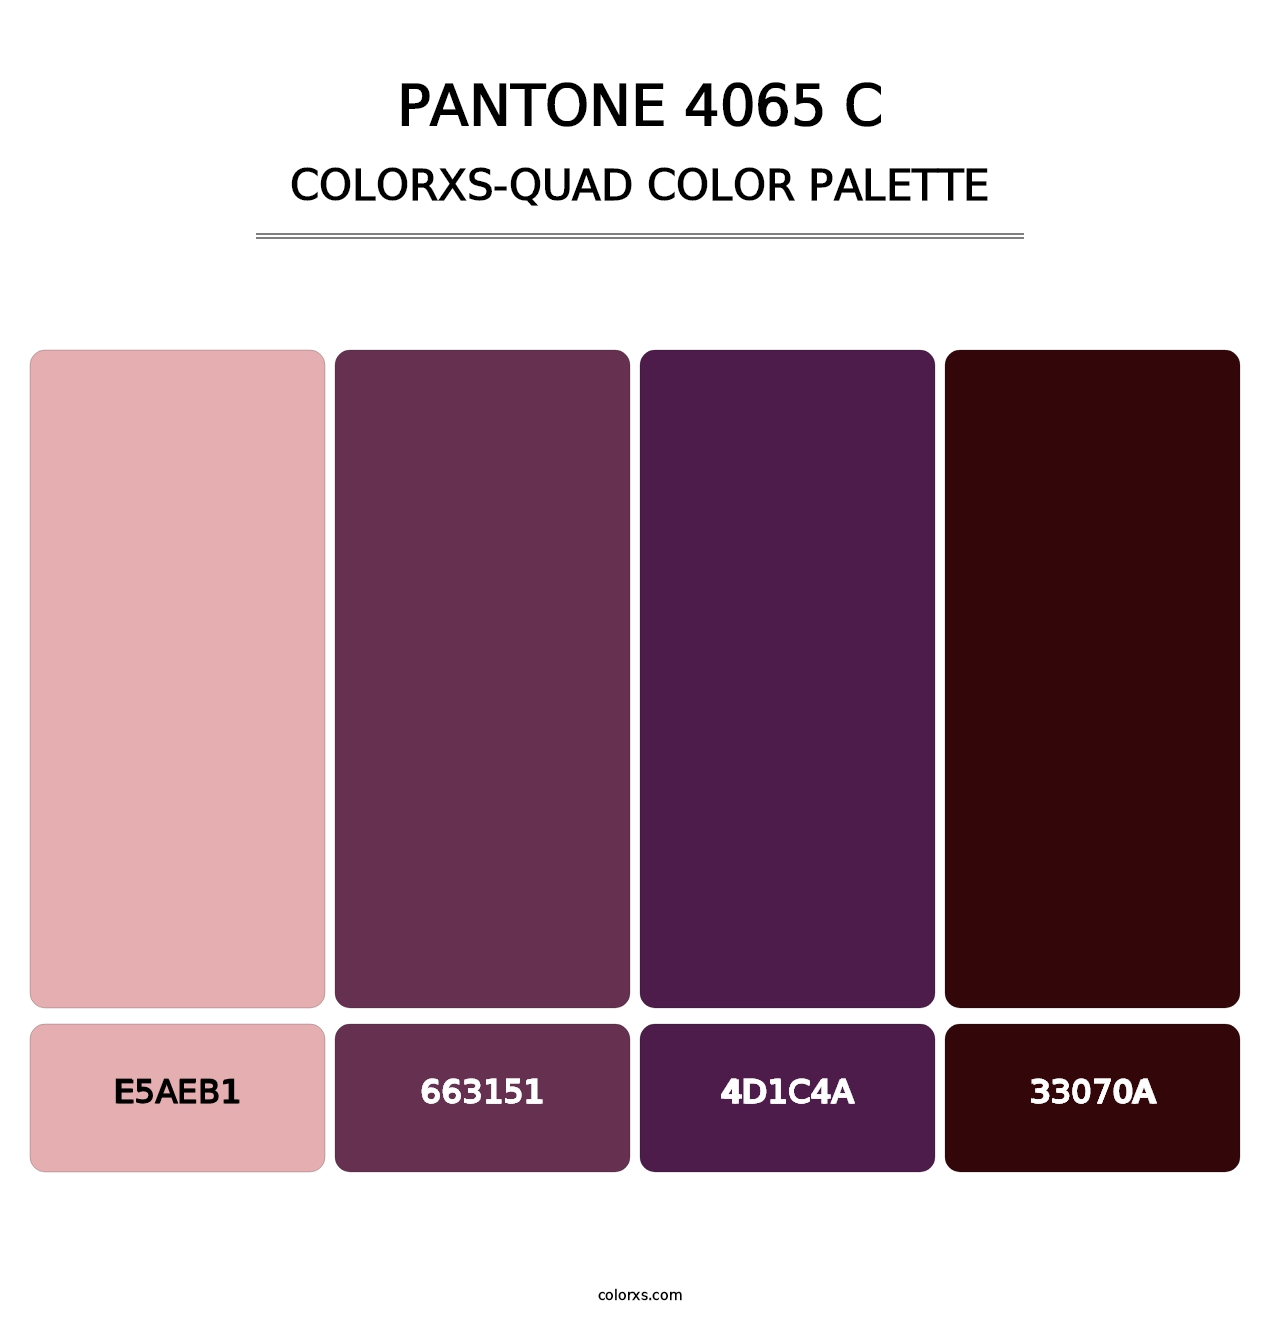 PANTONE 4065 C - Colorxs Quad Palette